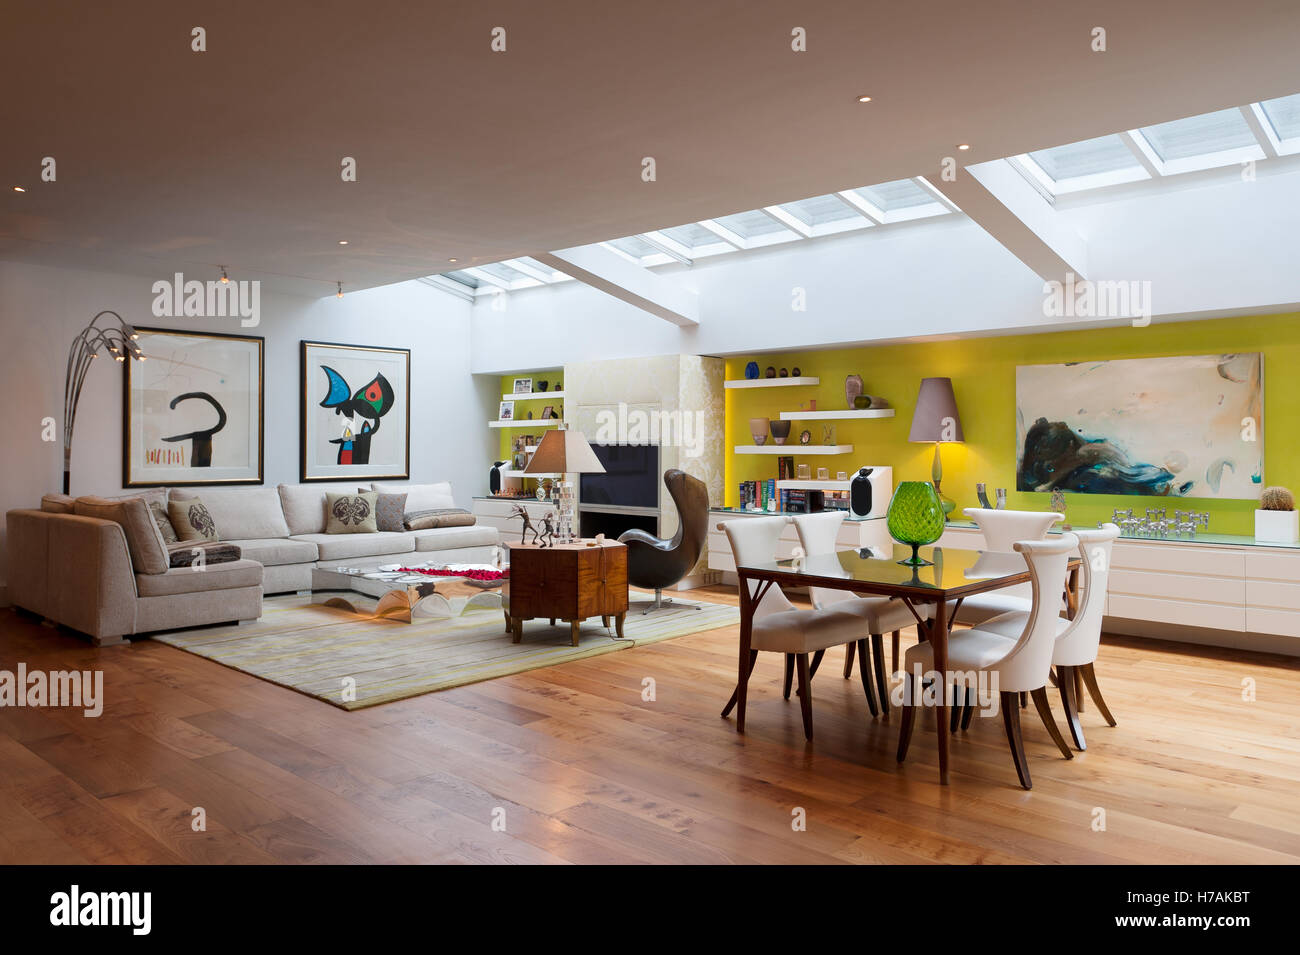 Offenen Innenraum mit Oberlicht und Miro druckt, Innenarchitektur UK Stockfoto